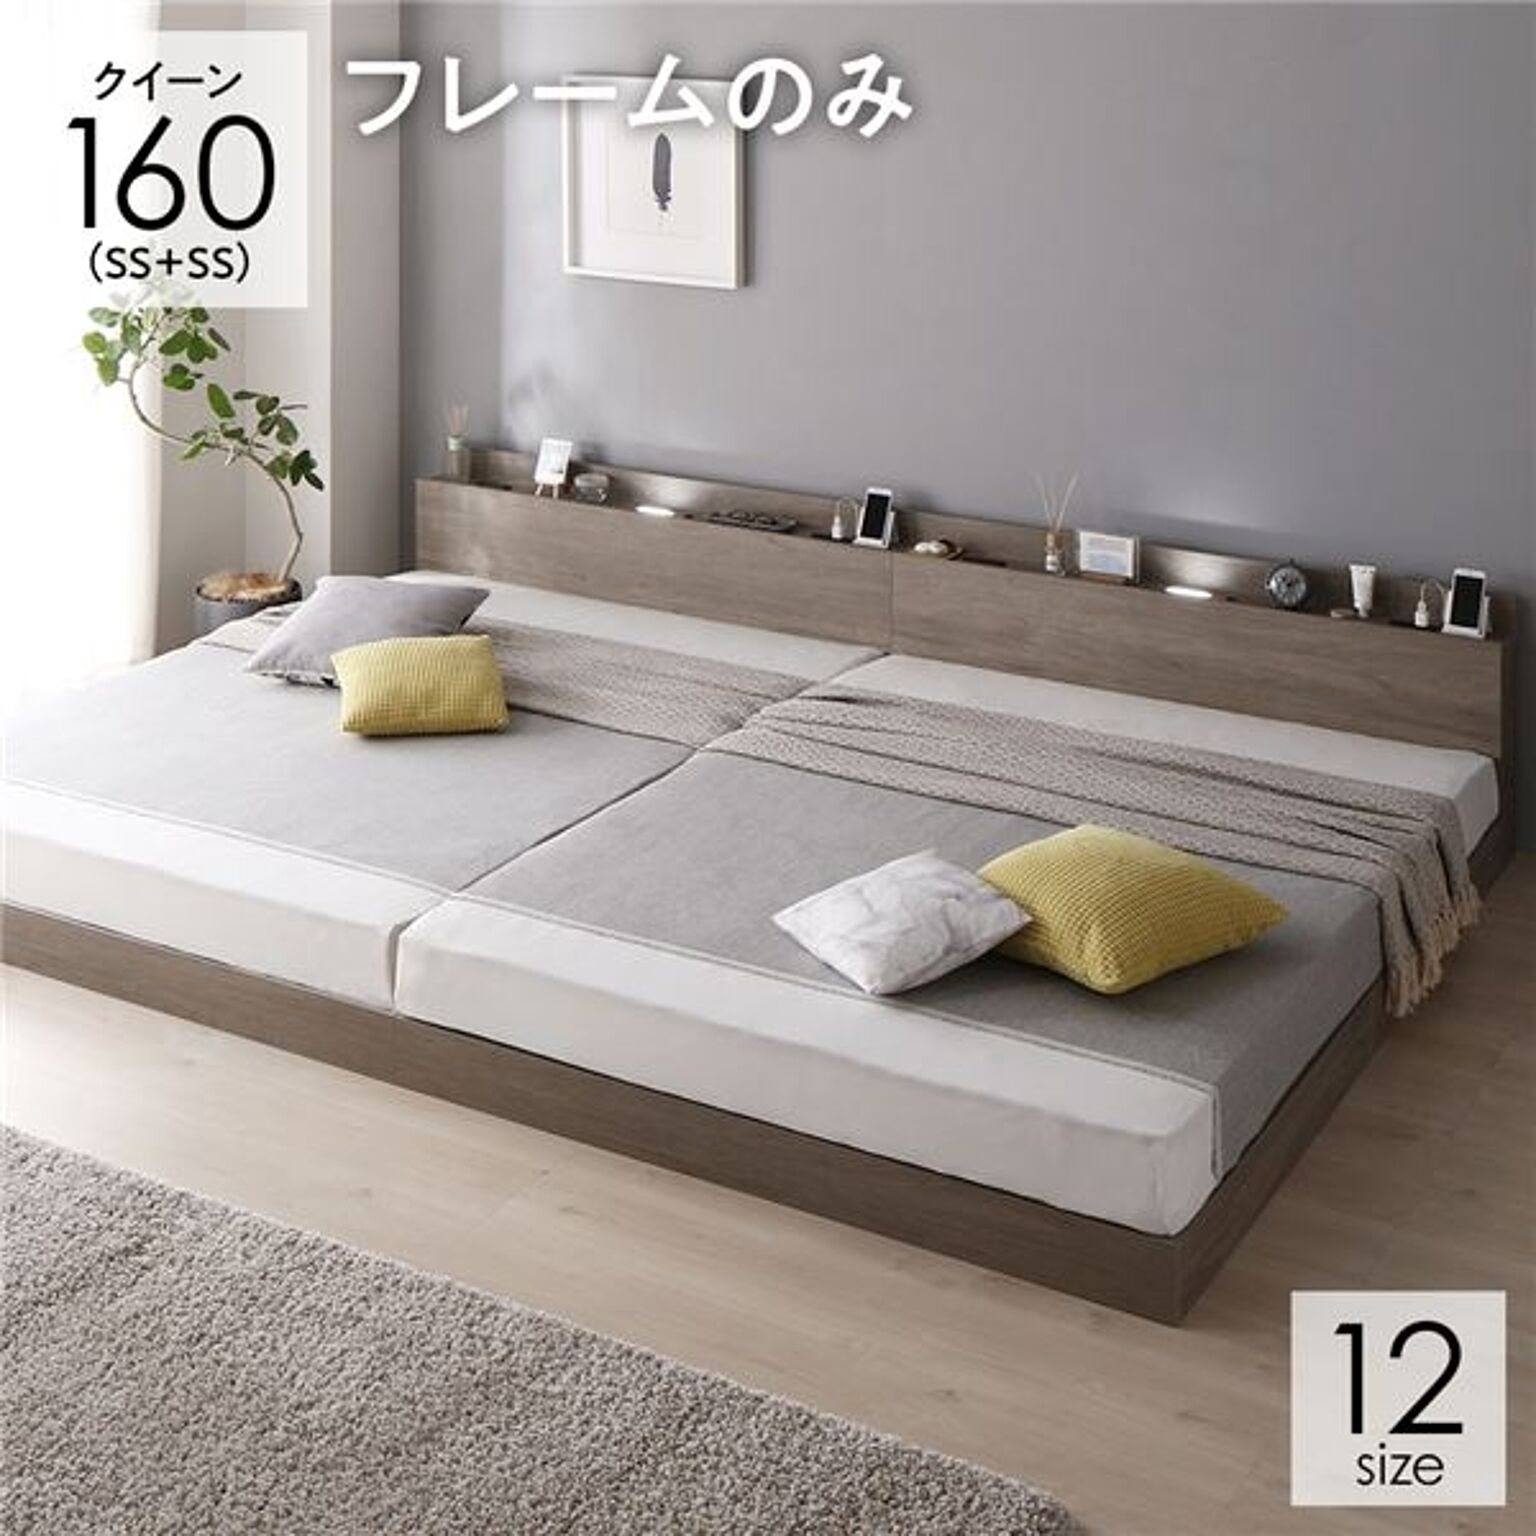 シングルベッド2台のおすすめ商品とおしゃれな実例 ｜ RoomClip